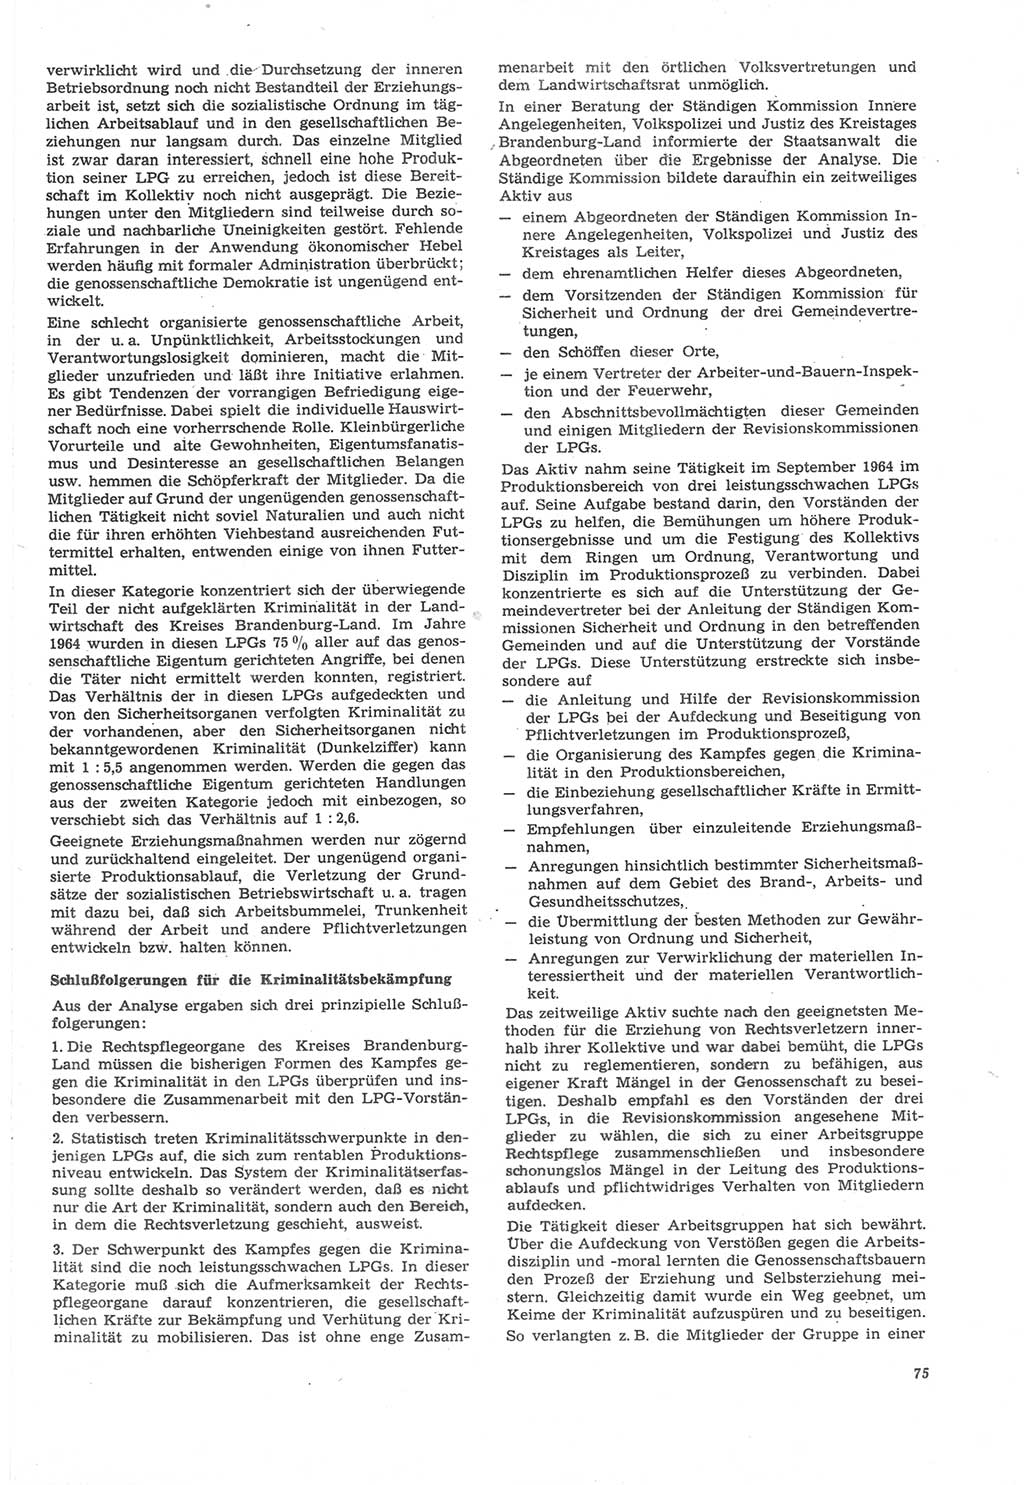 Neue Justiz (NJ), Zeitschrift für Recht und Rechtswissenschaft [Deutsche Demokratische Republik (DDR)], 22. Jahrgang 1968, Seite 75 (NJ DDR 1968, S. 75)